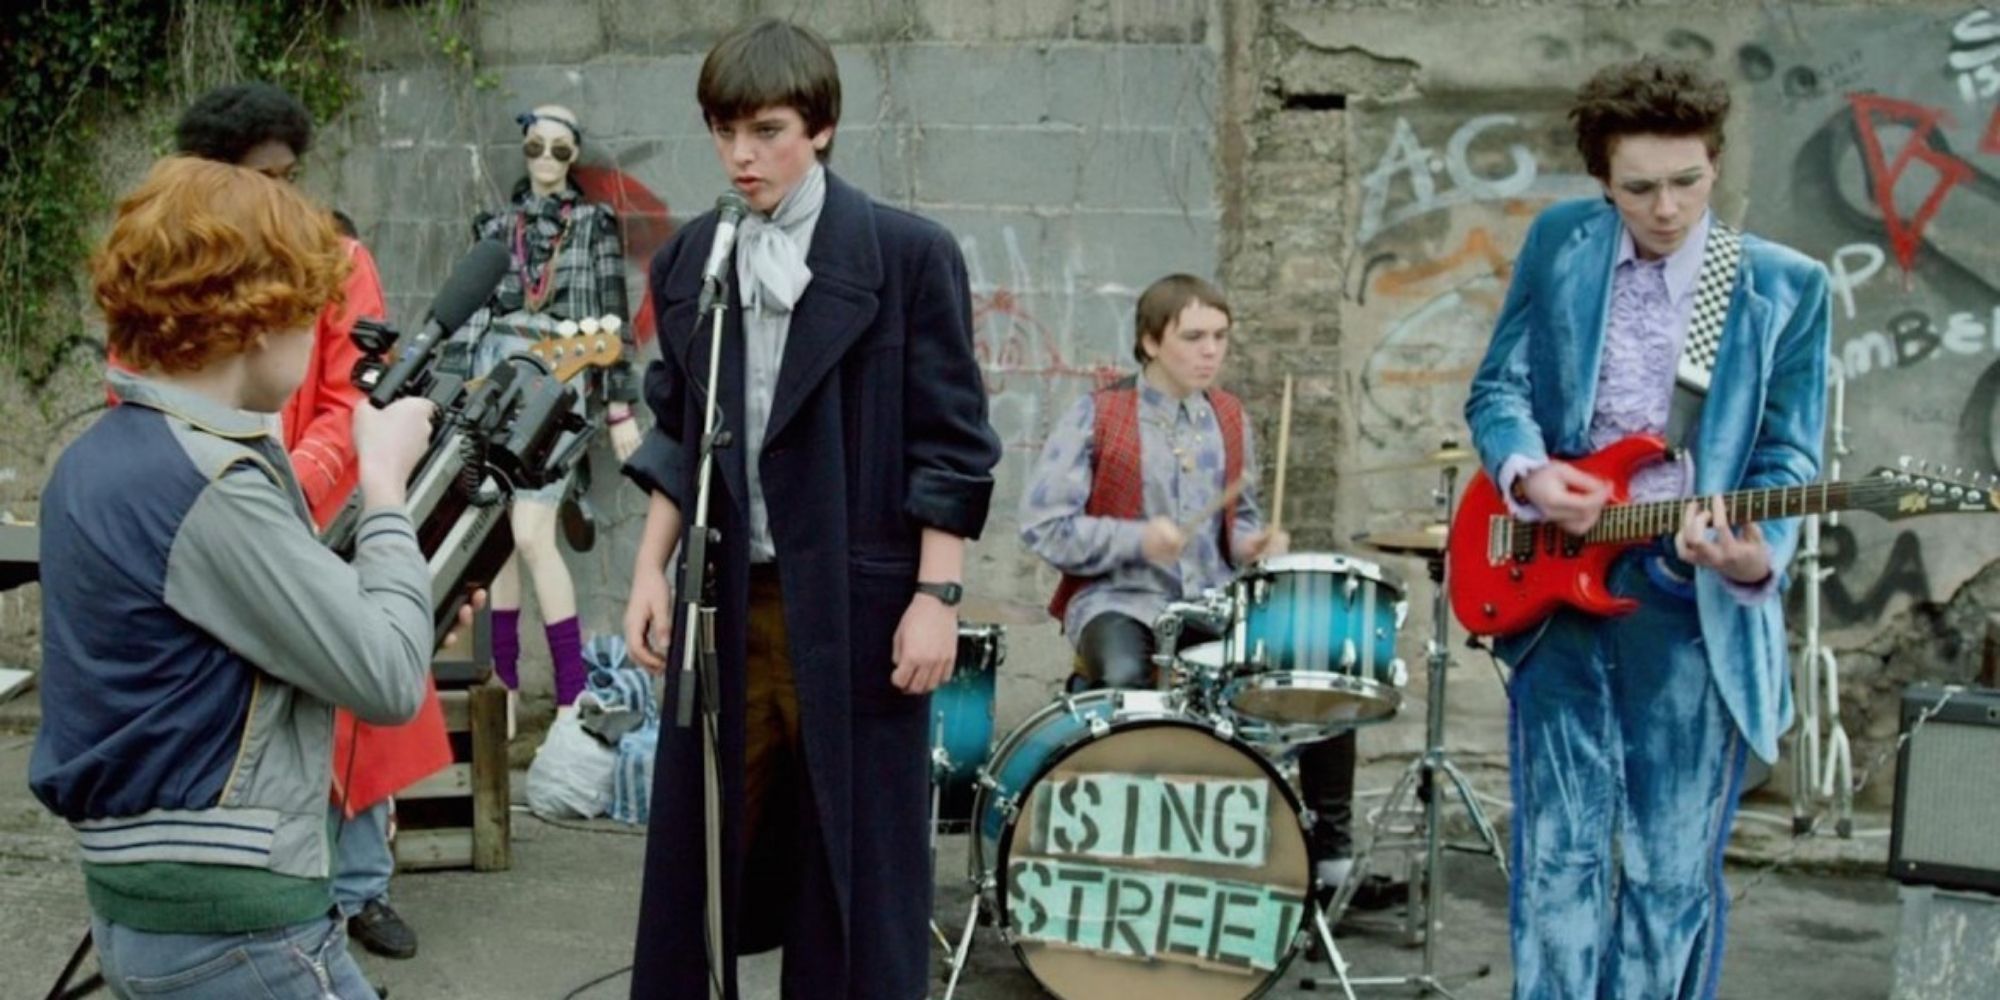 Le groupe Sing Street filme un clip vidéo dans Sing Street